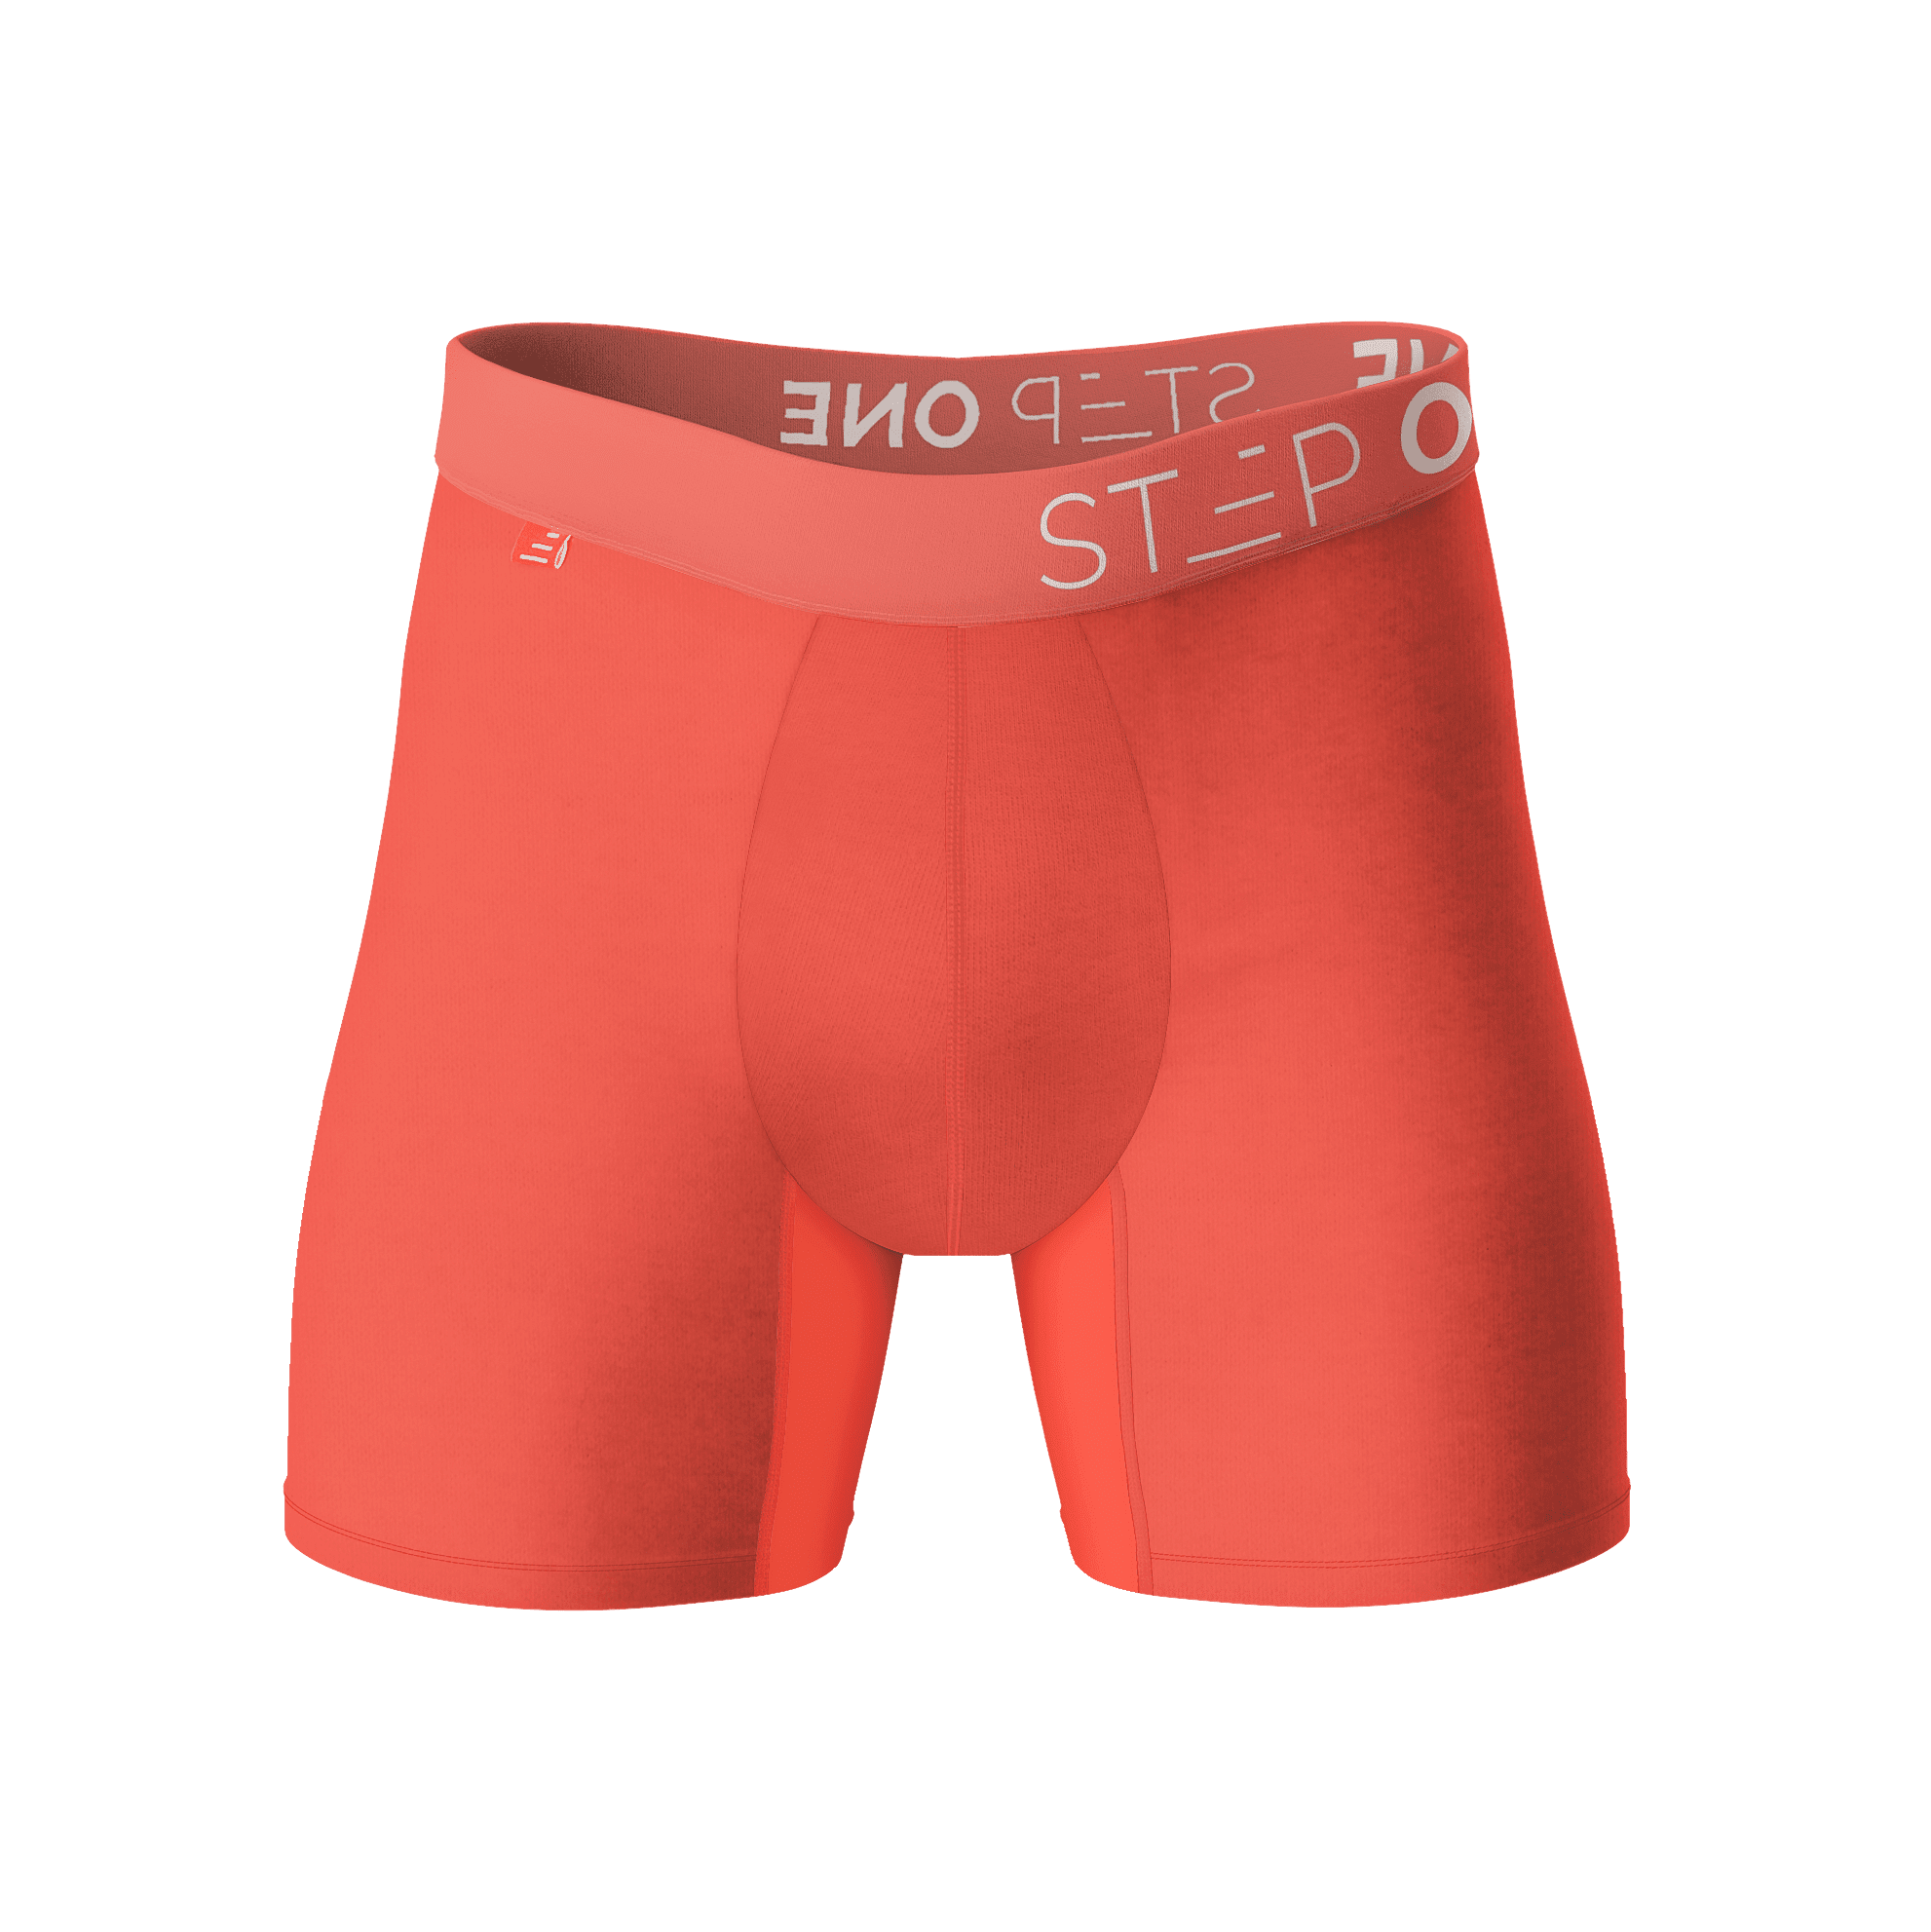 Boxer Brief - Hibiscus  Step One Men's Underwear UK